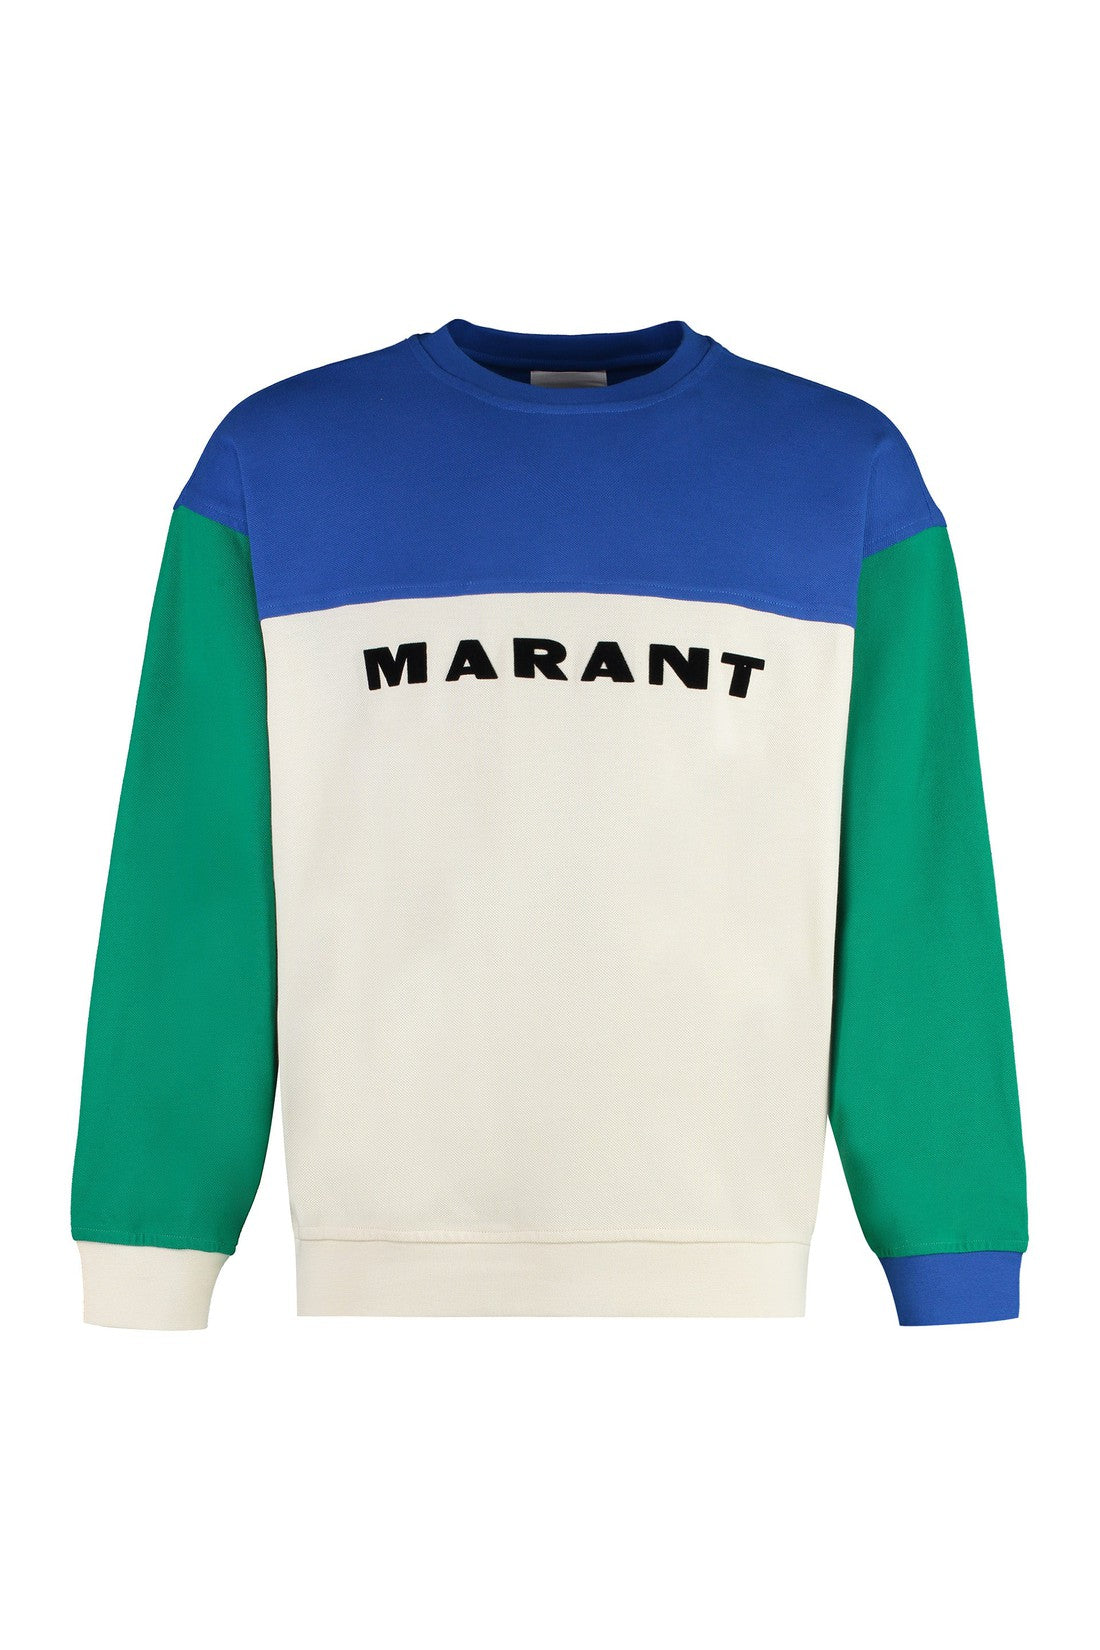 Marant-OUTLET-SALE-Aftone Cotton crew-neck sweatshirt-ARCHIVIST